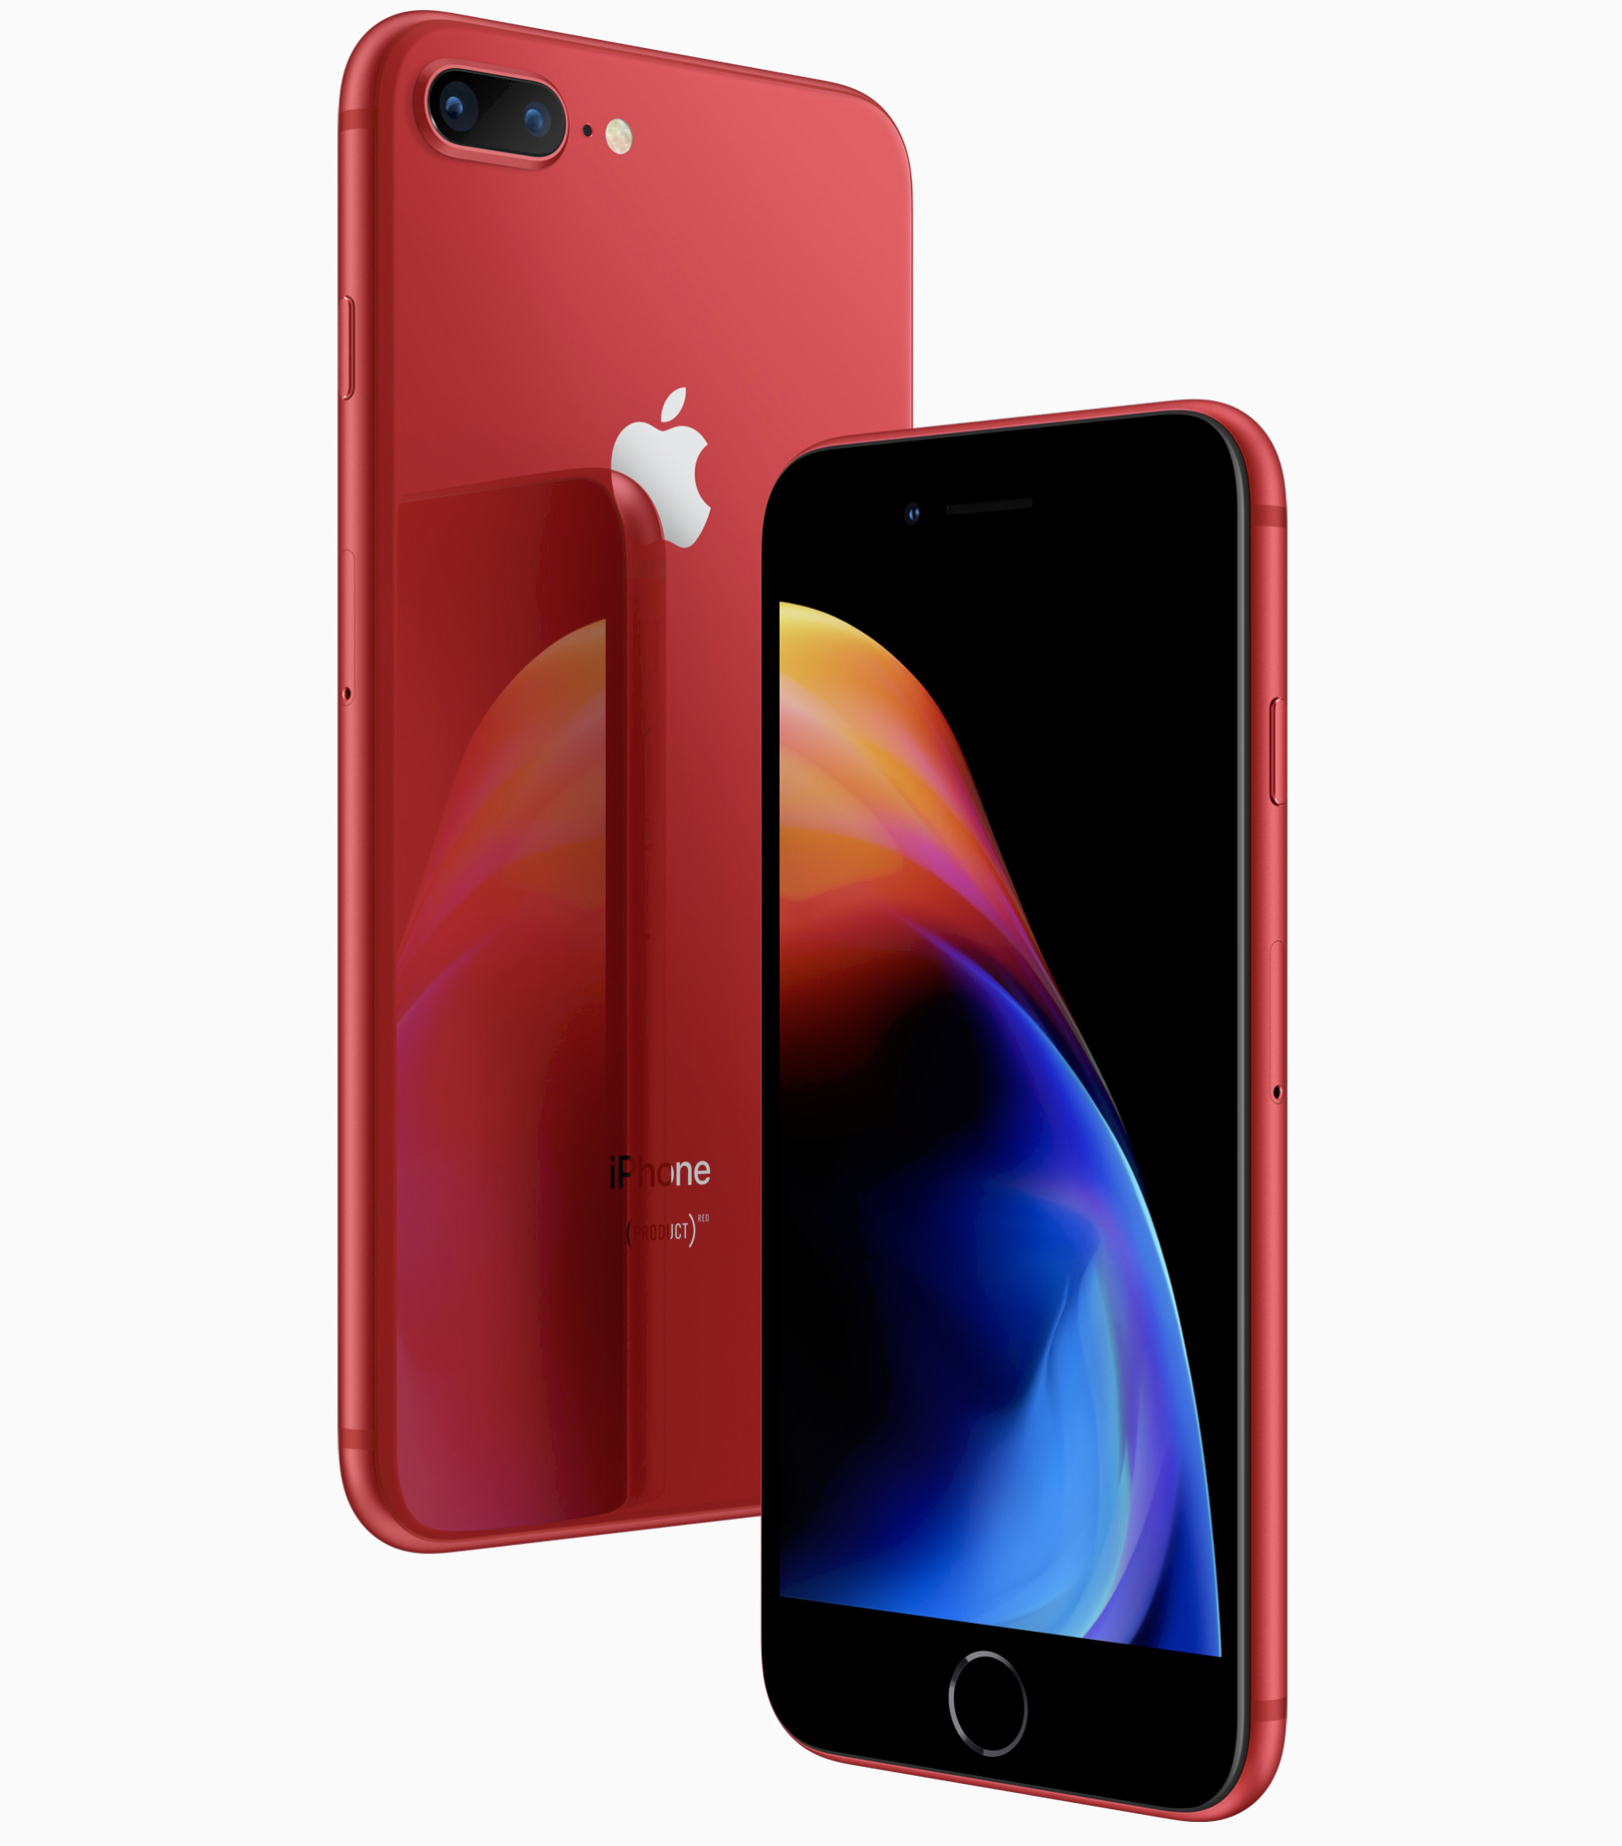 Apple presenta el iPhone 8 versión roja y iPhone 8 Plus